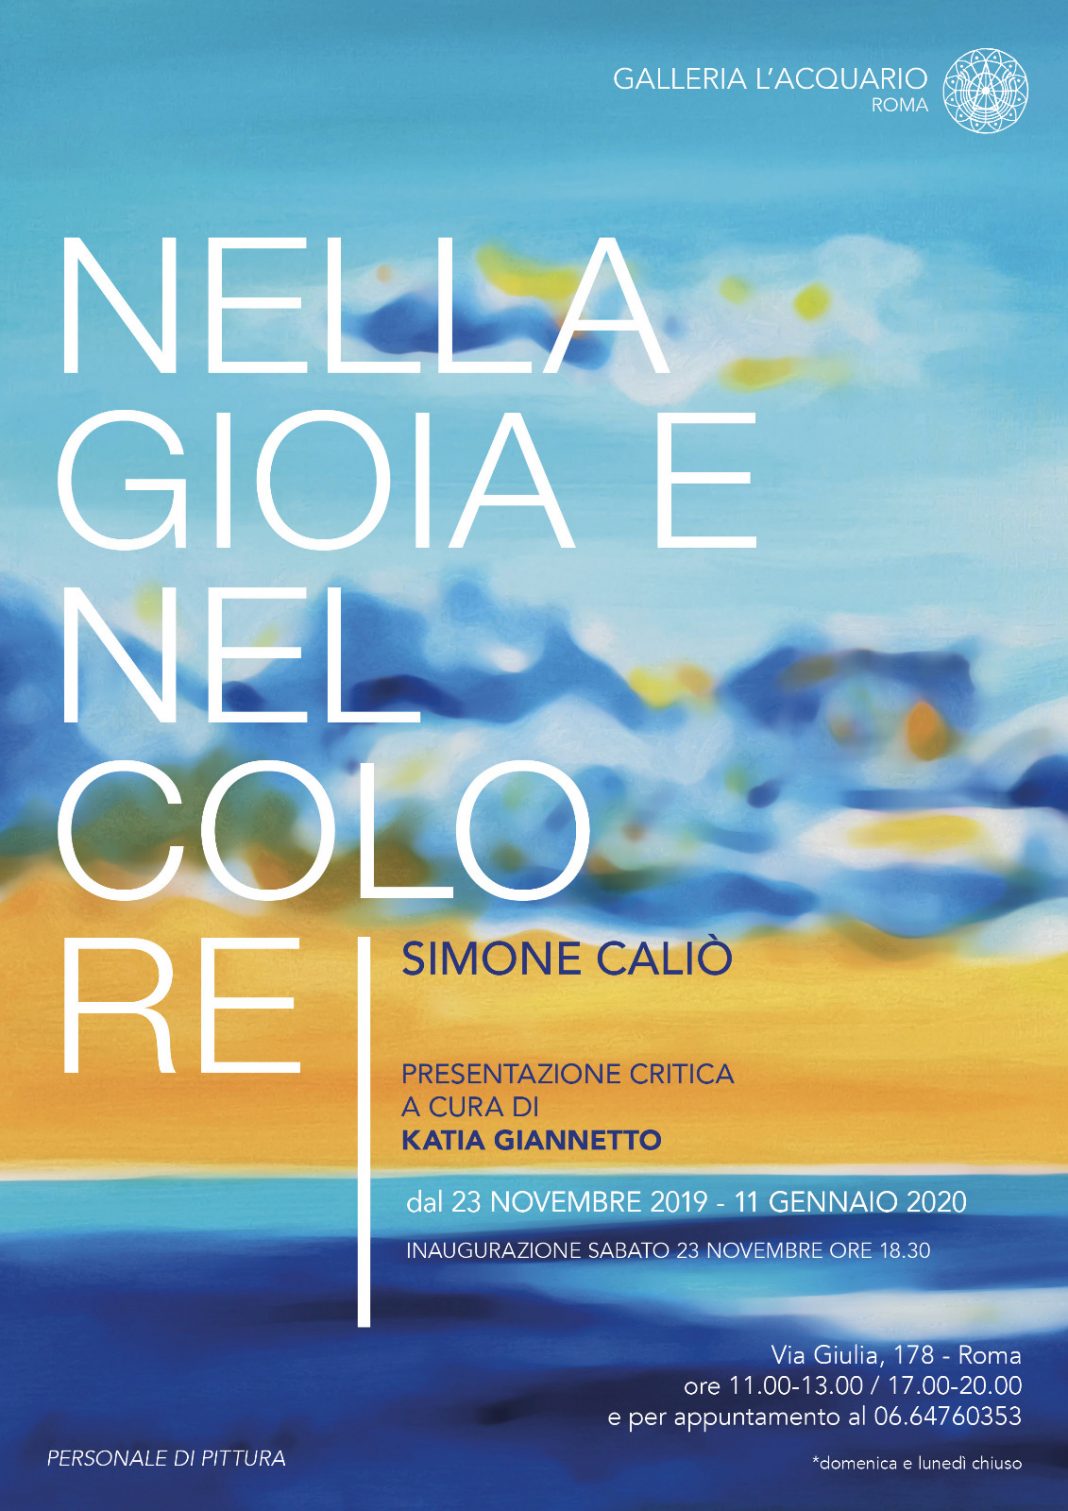 Simone Caliò – Nella gioia e nel colorehttps://www.exibart.com/repository/media/formidable/11/locandina-2-1068x1511.jpeg